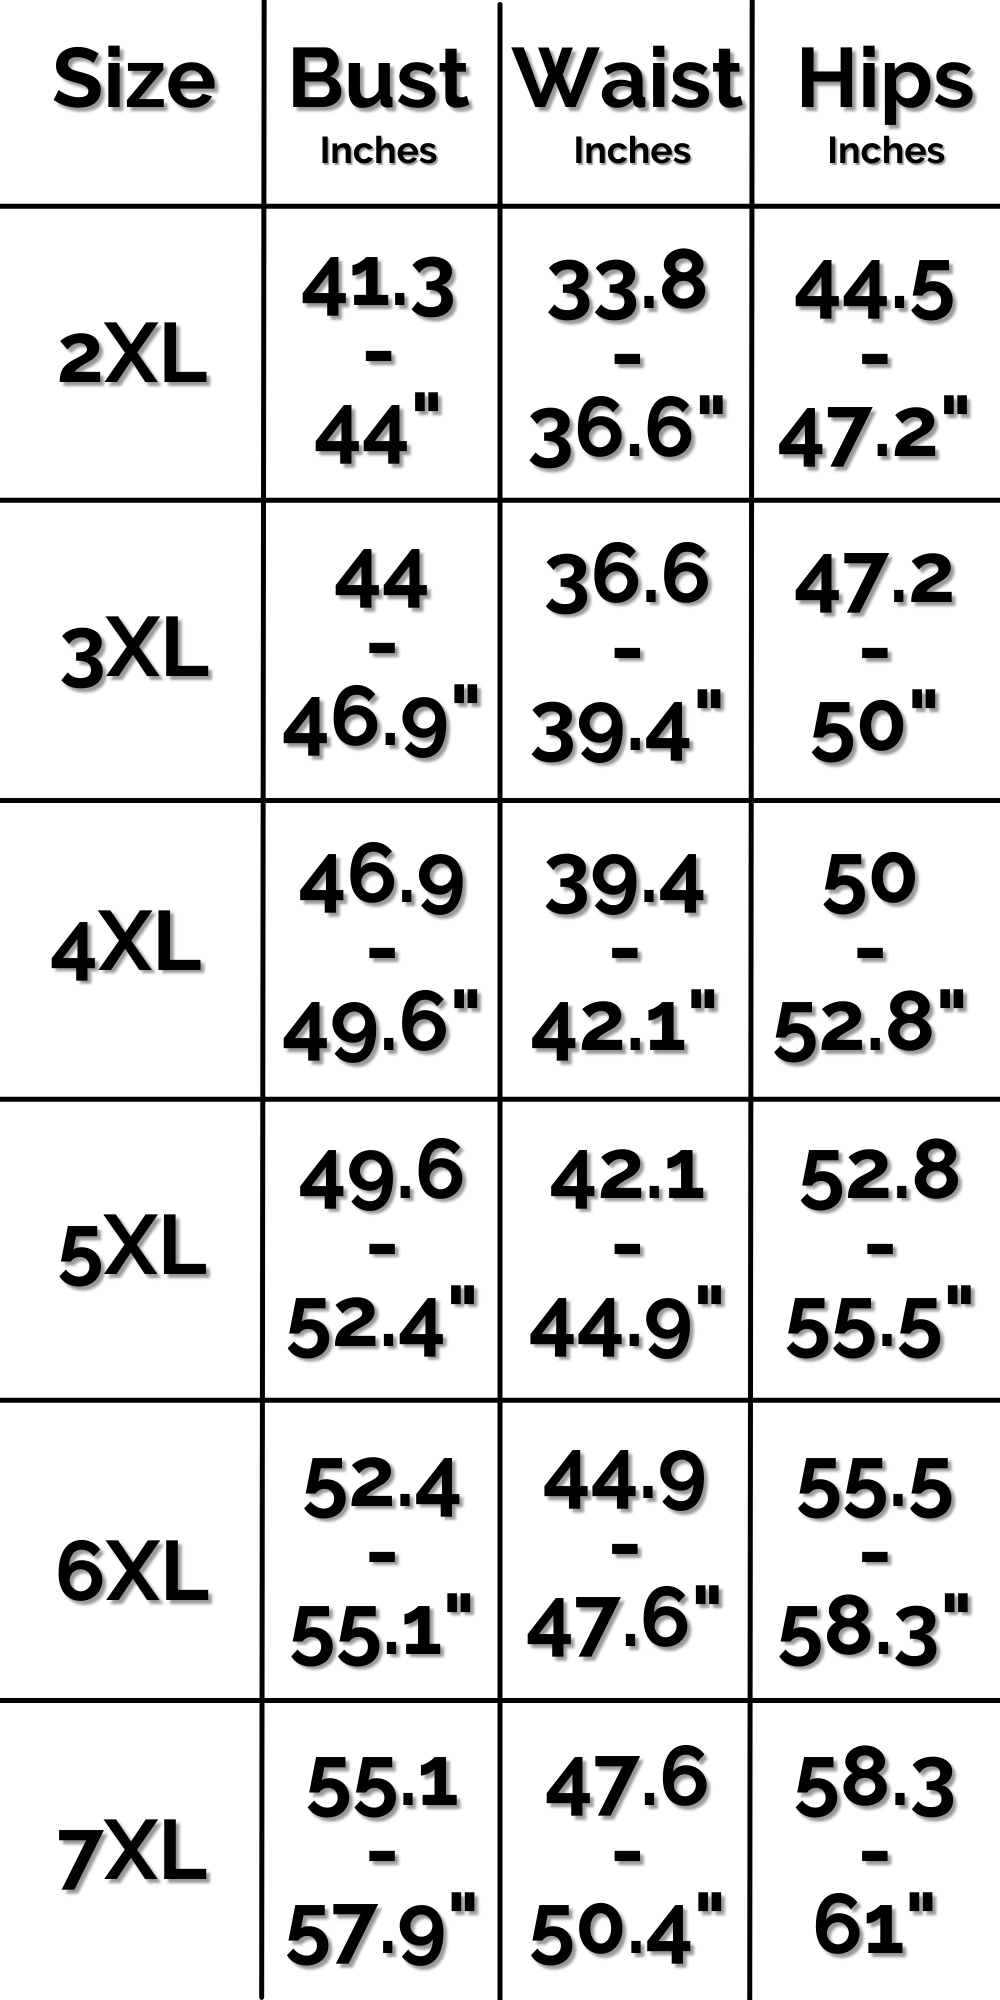 US Slip Dress Size Chart 2 of 2